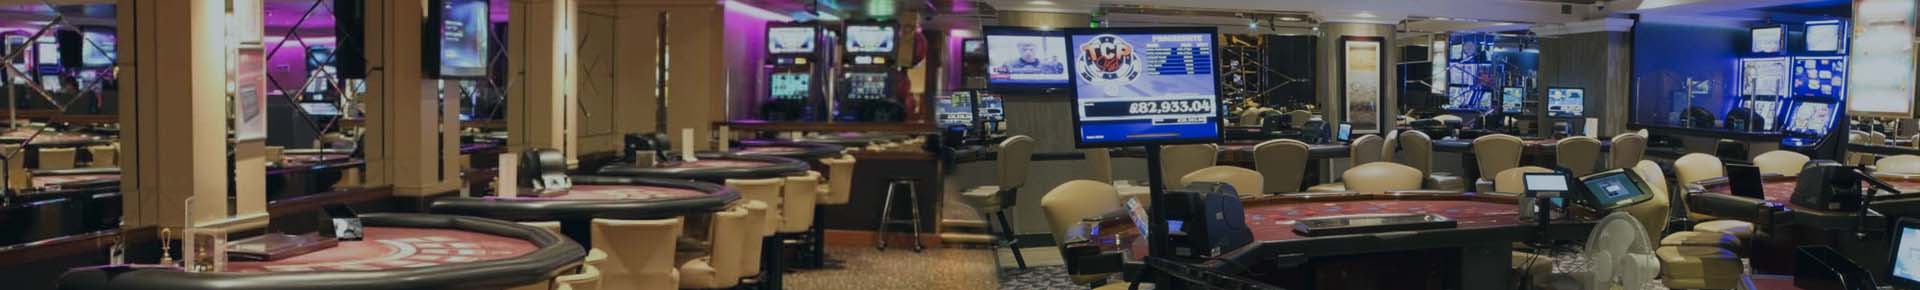 Wertverlust casino online bonus 200 Nuckelpinne Jahre